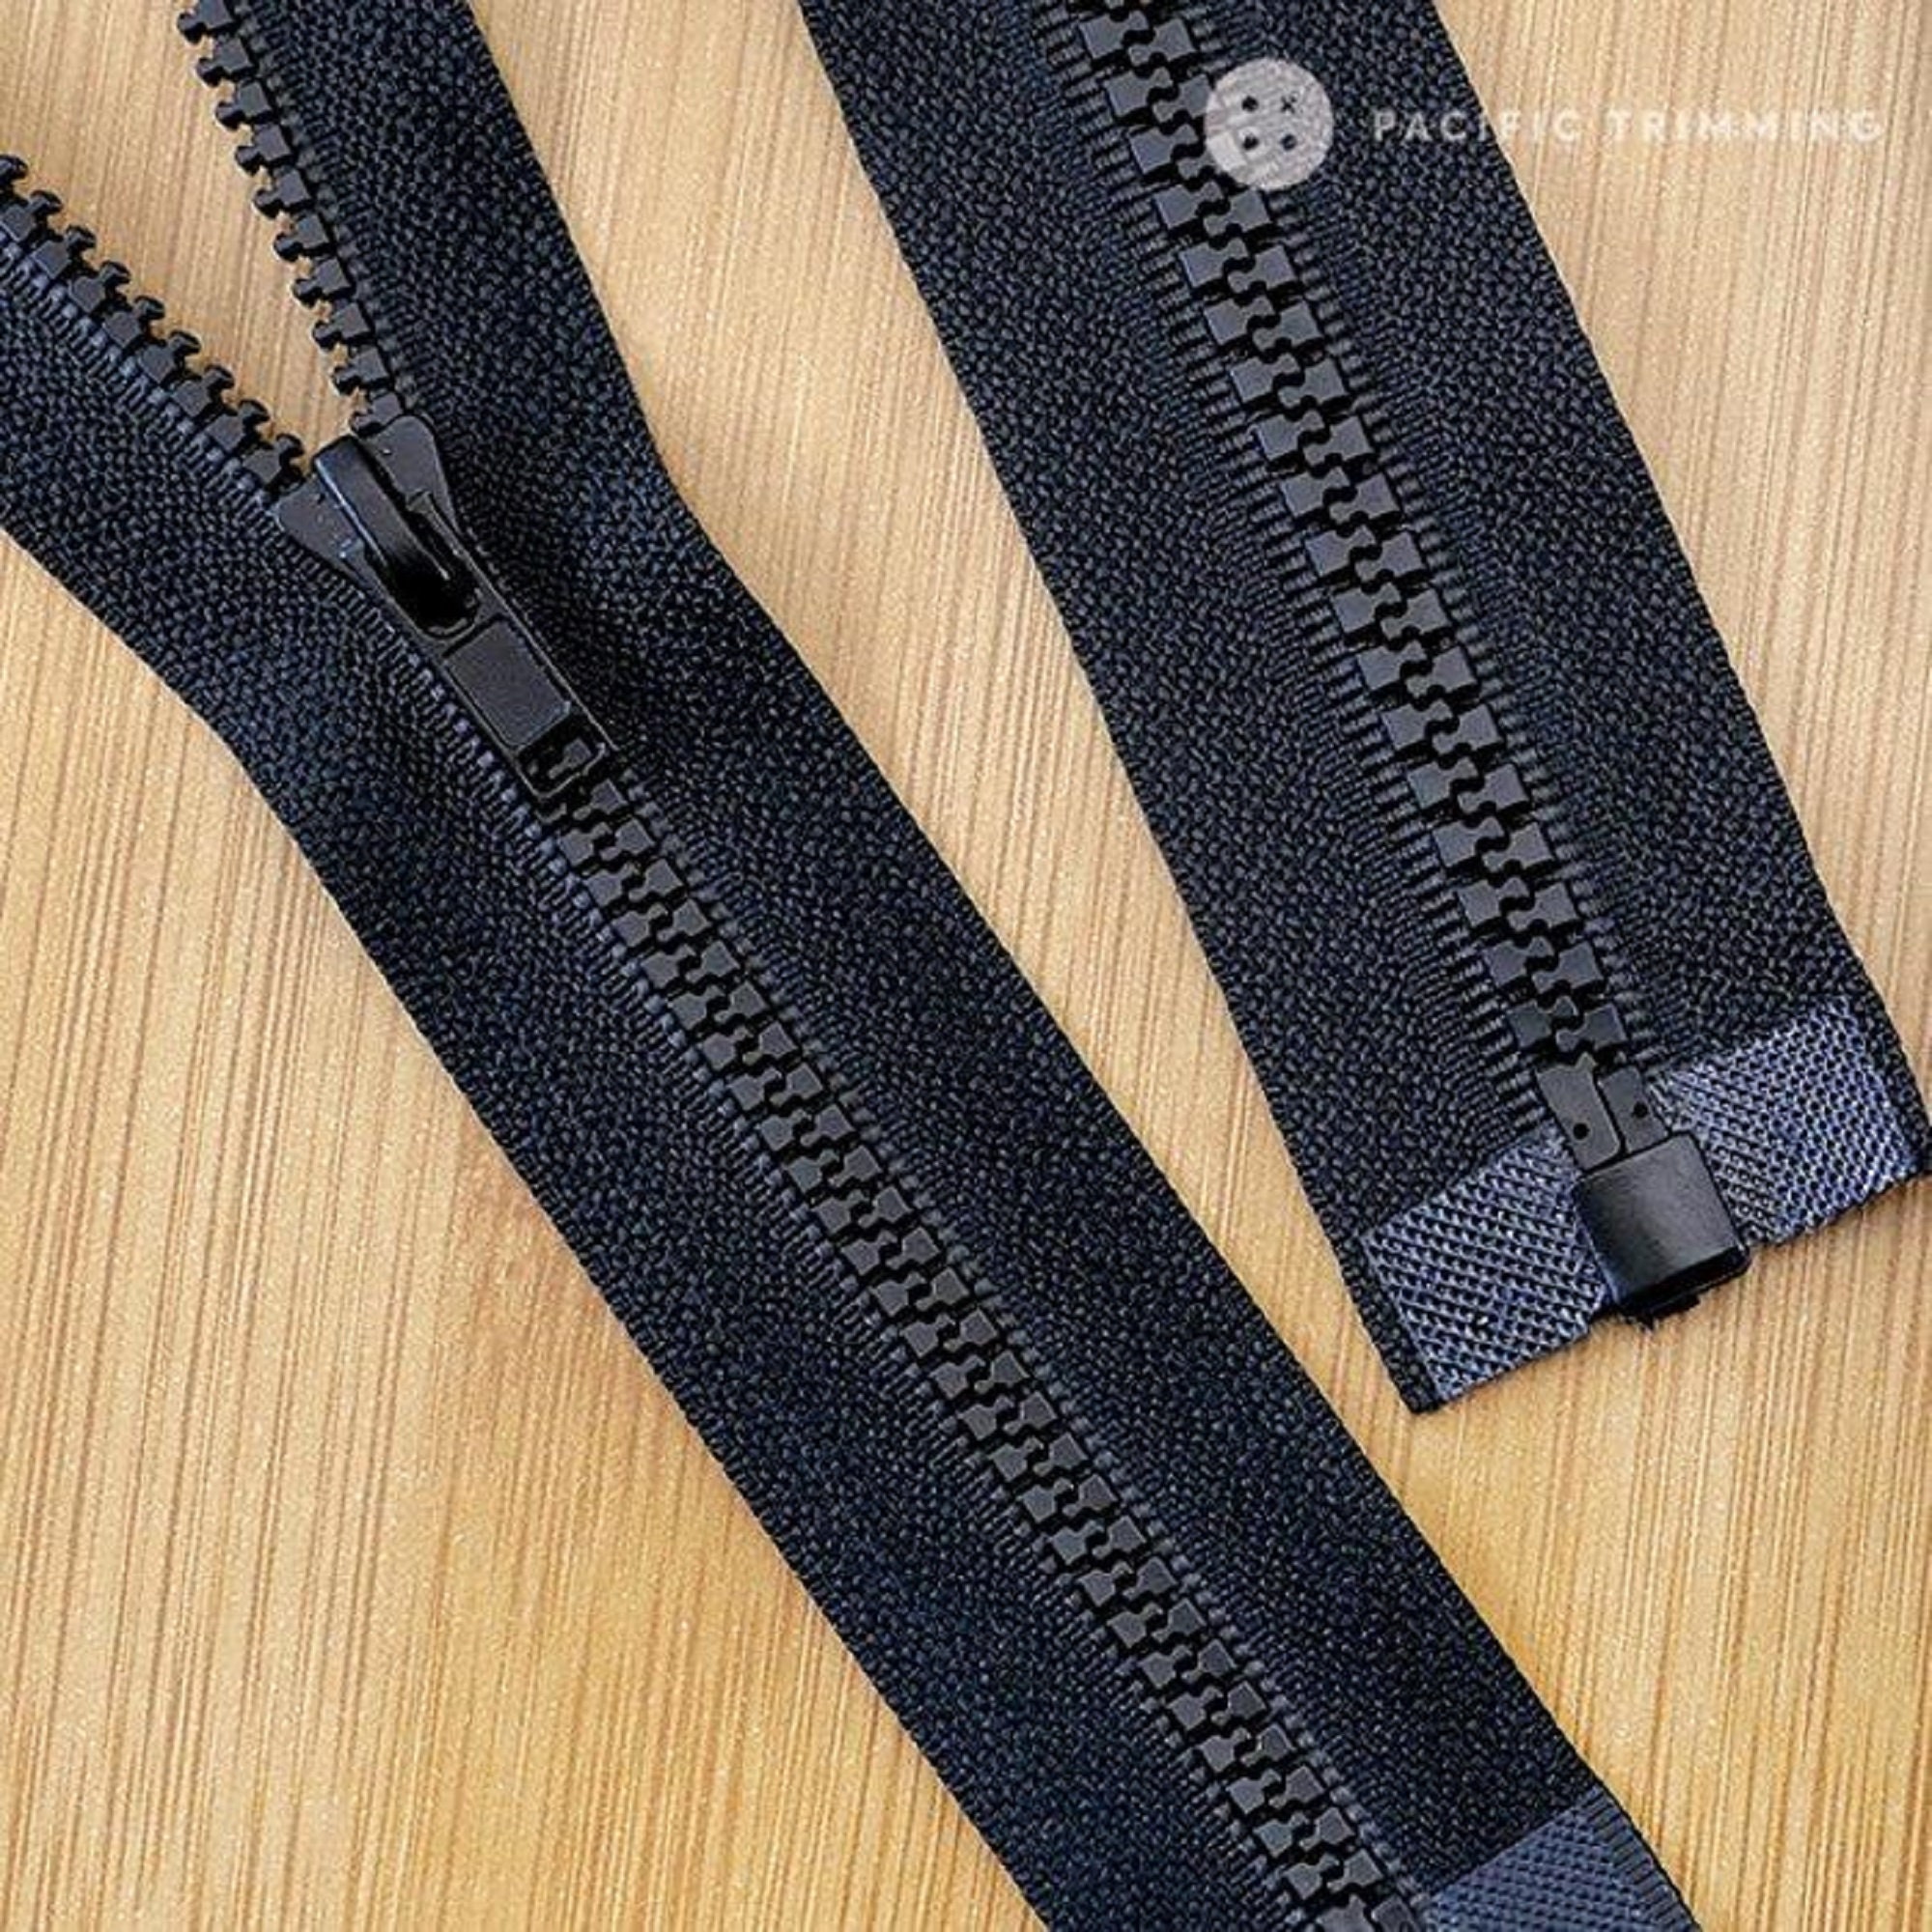 YKK #8 Molded Plastic Two-Way Jacket Bottom Slide Zipper Sliders - 2/Pack -  Black (580)